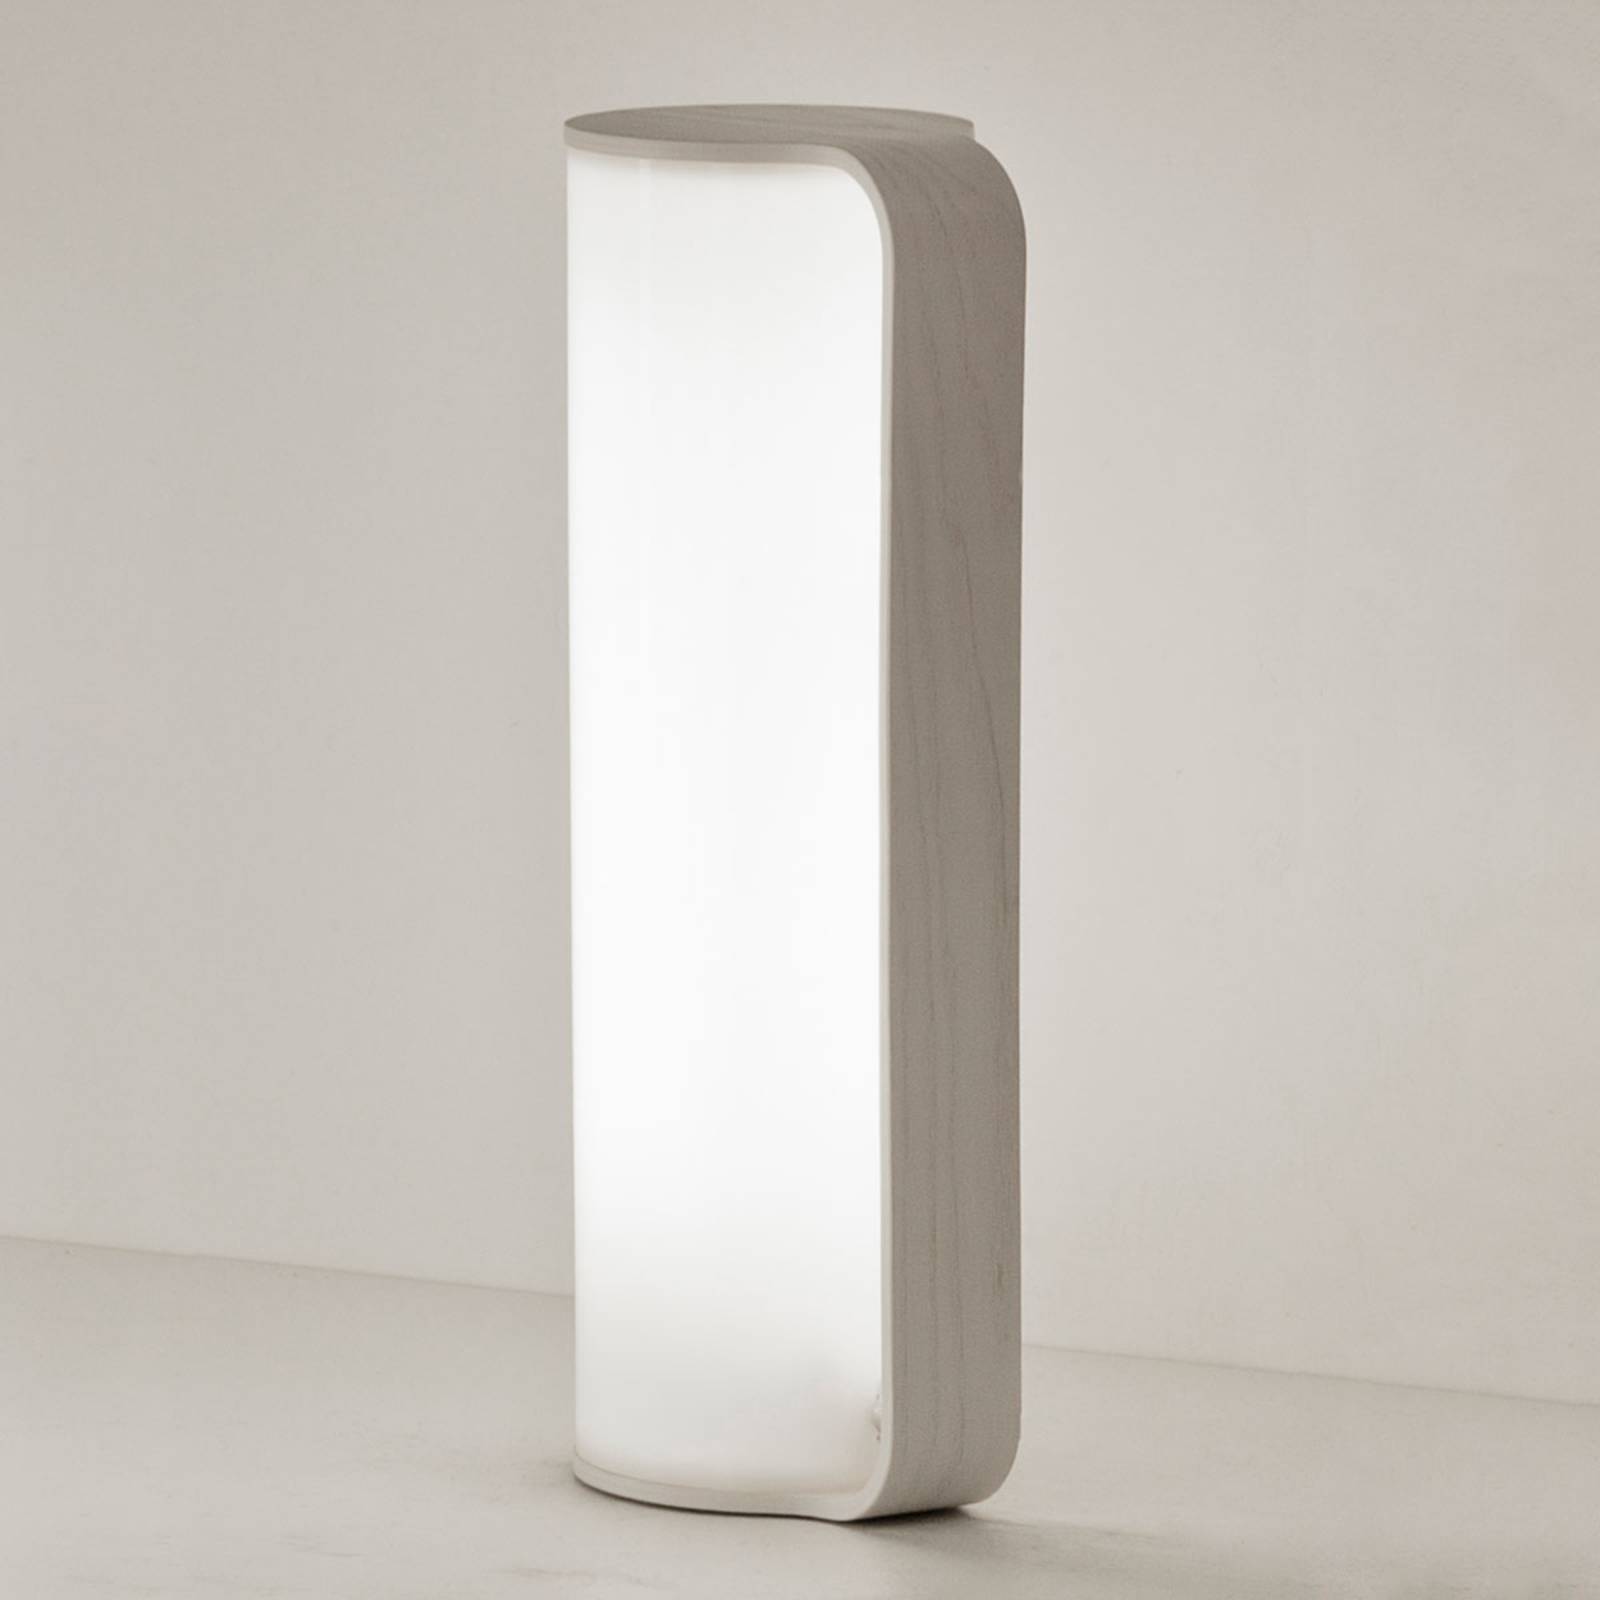 Innolux tubo led terápiás lámpa dimmelhető fehér színben